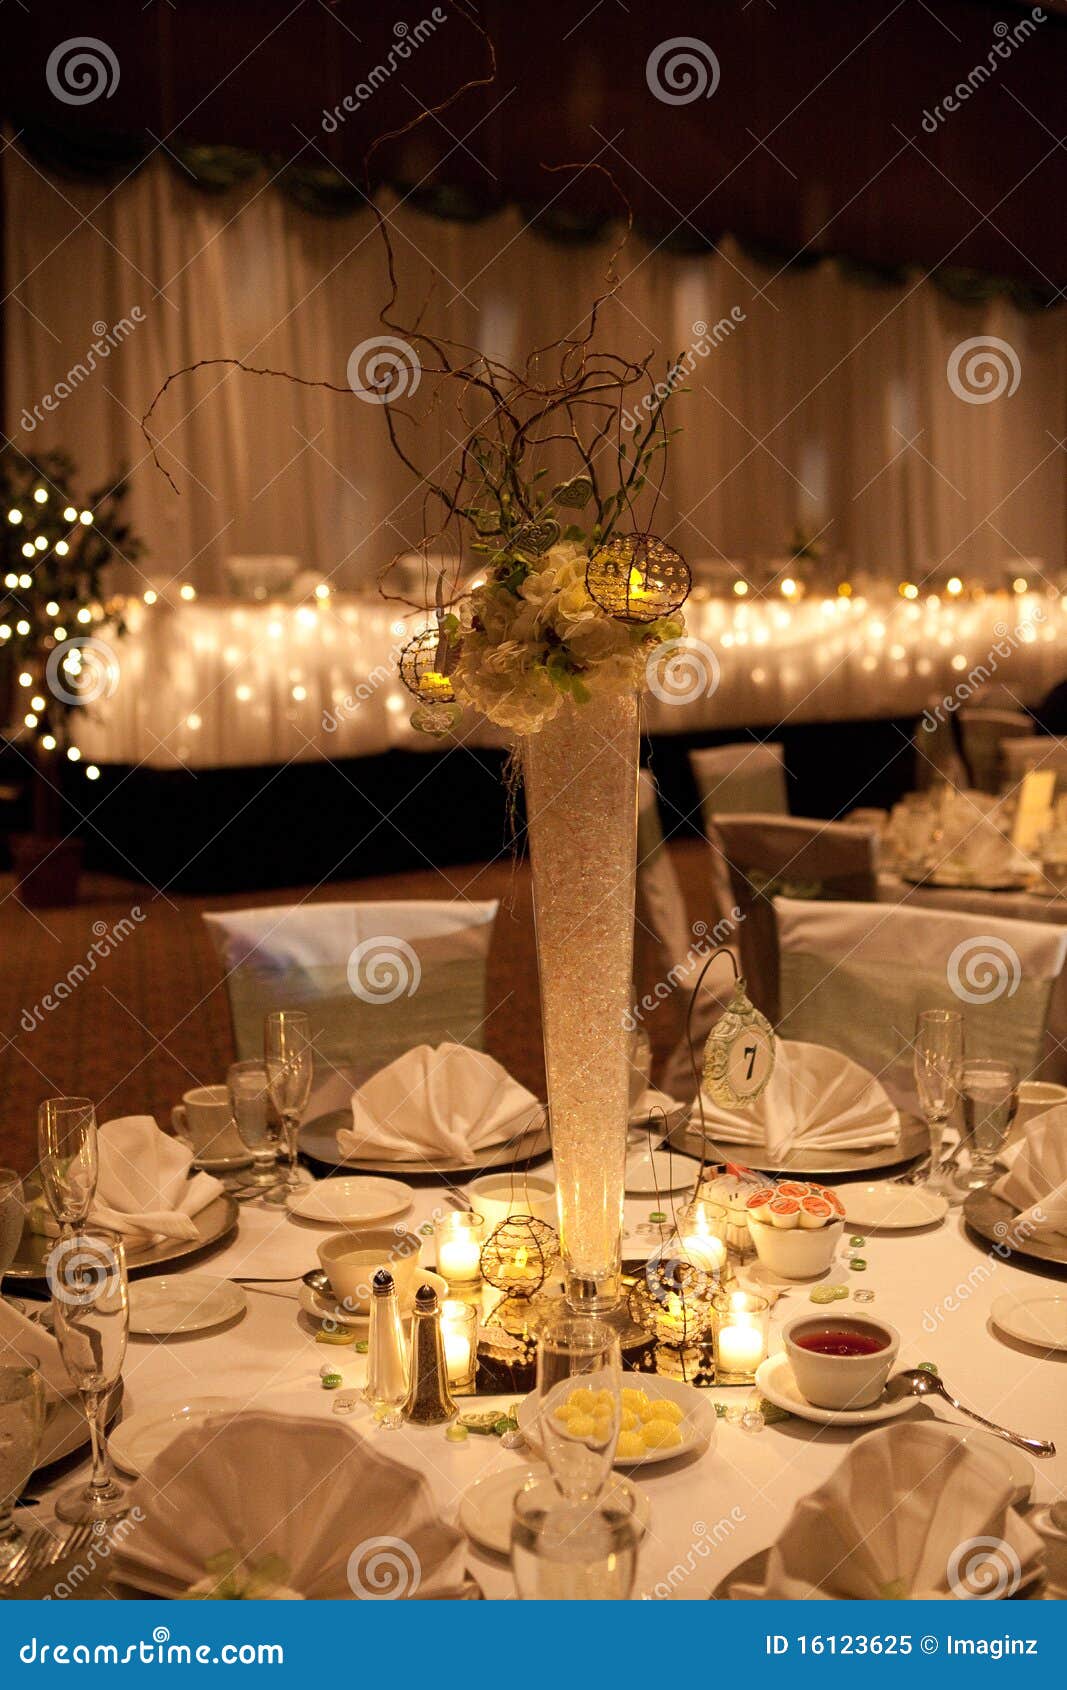 wedding banquet centrepiece